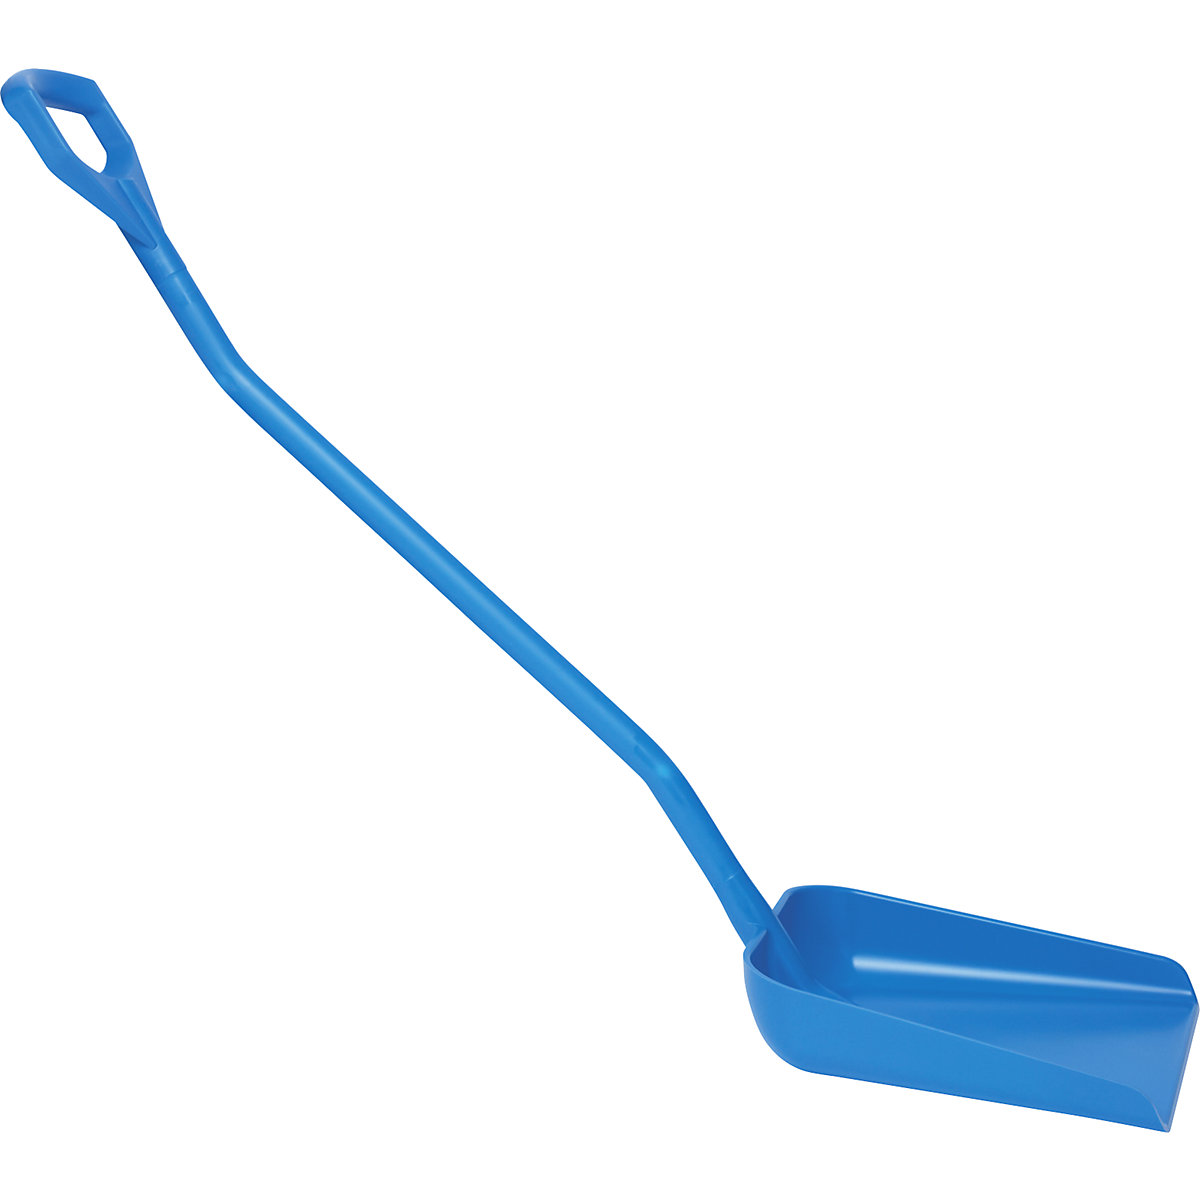 Pelle ergonomique de qualité alimentaire – Vikan, longueur h.t. 1310 mm, bleu-3